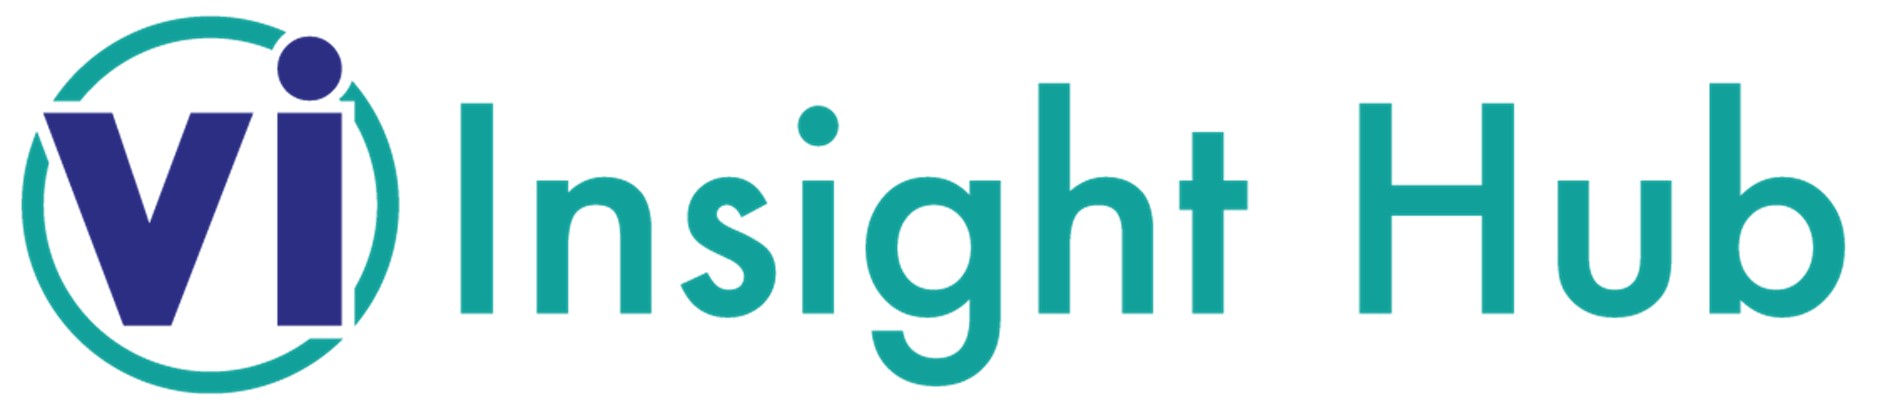 VI Insight Hub logo